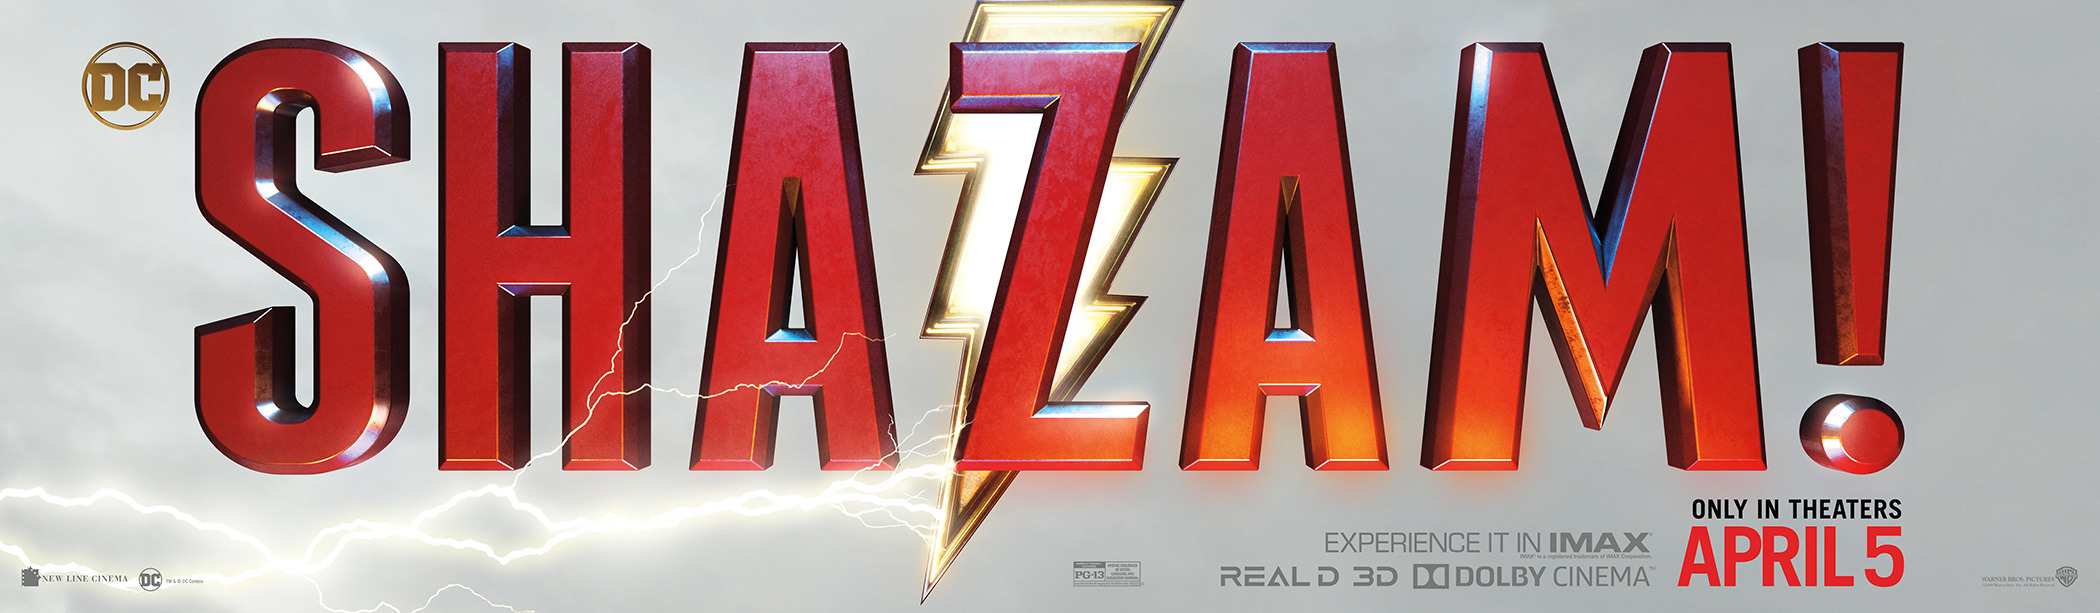 Mega Sized Movie Poster Image for Shazam! (#8 of 10)